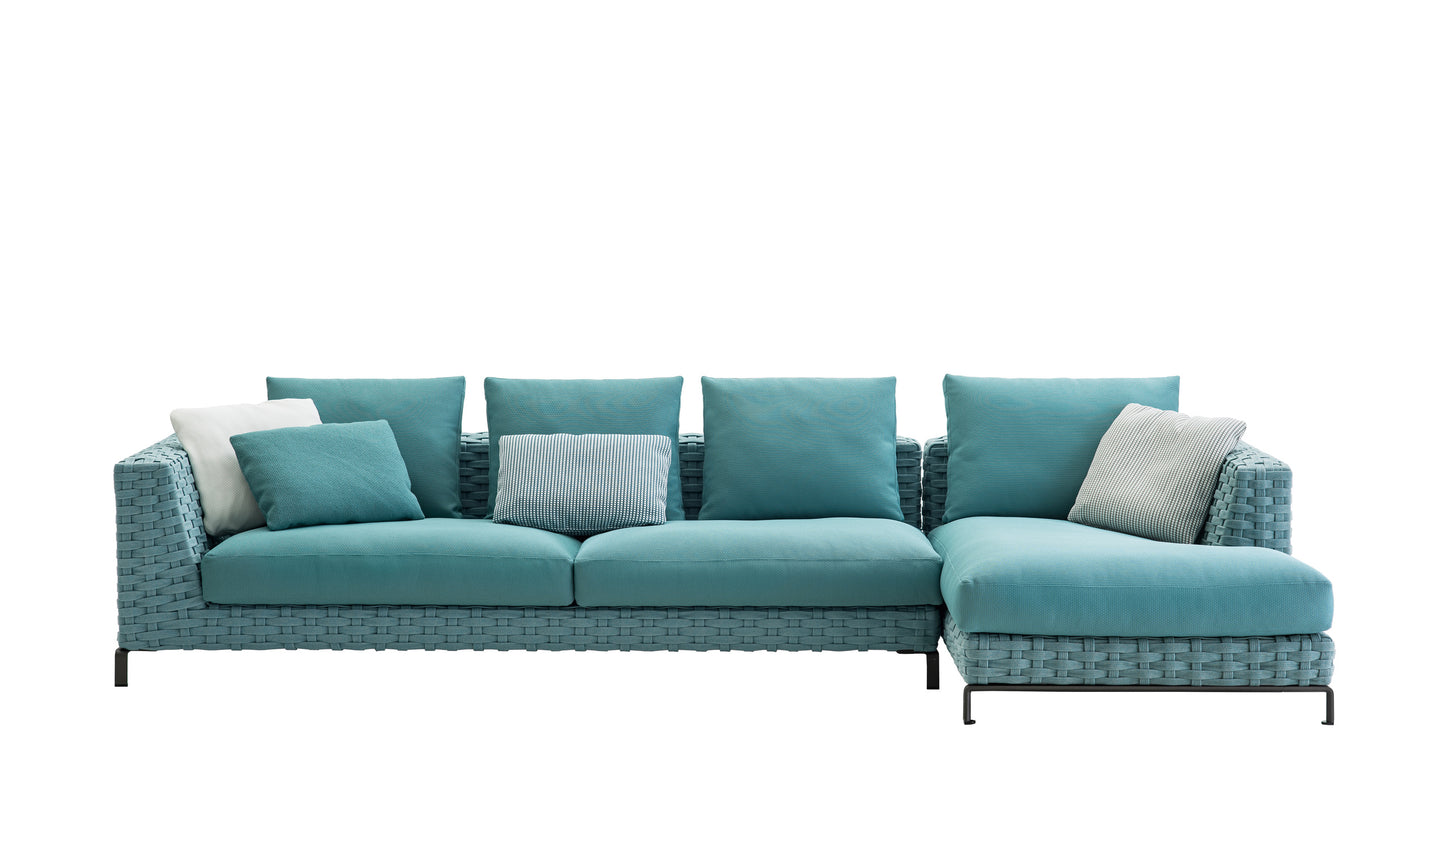 B&B italia Ray Outdoor sofa